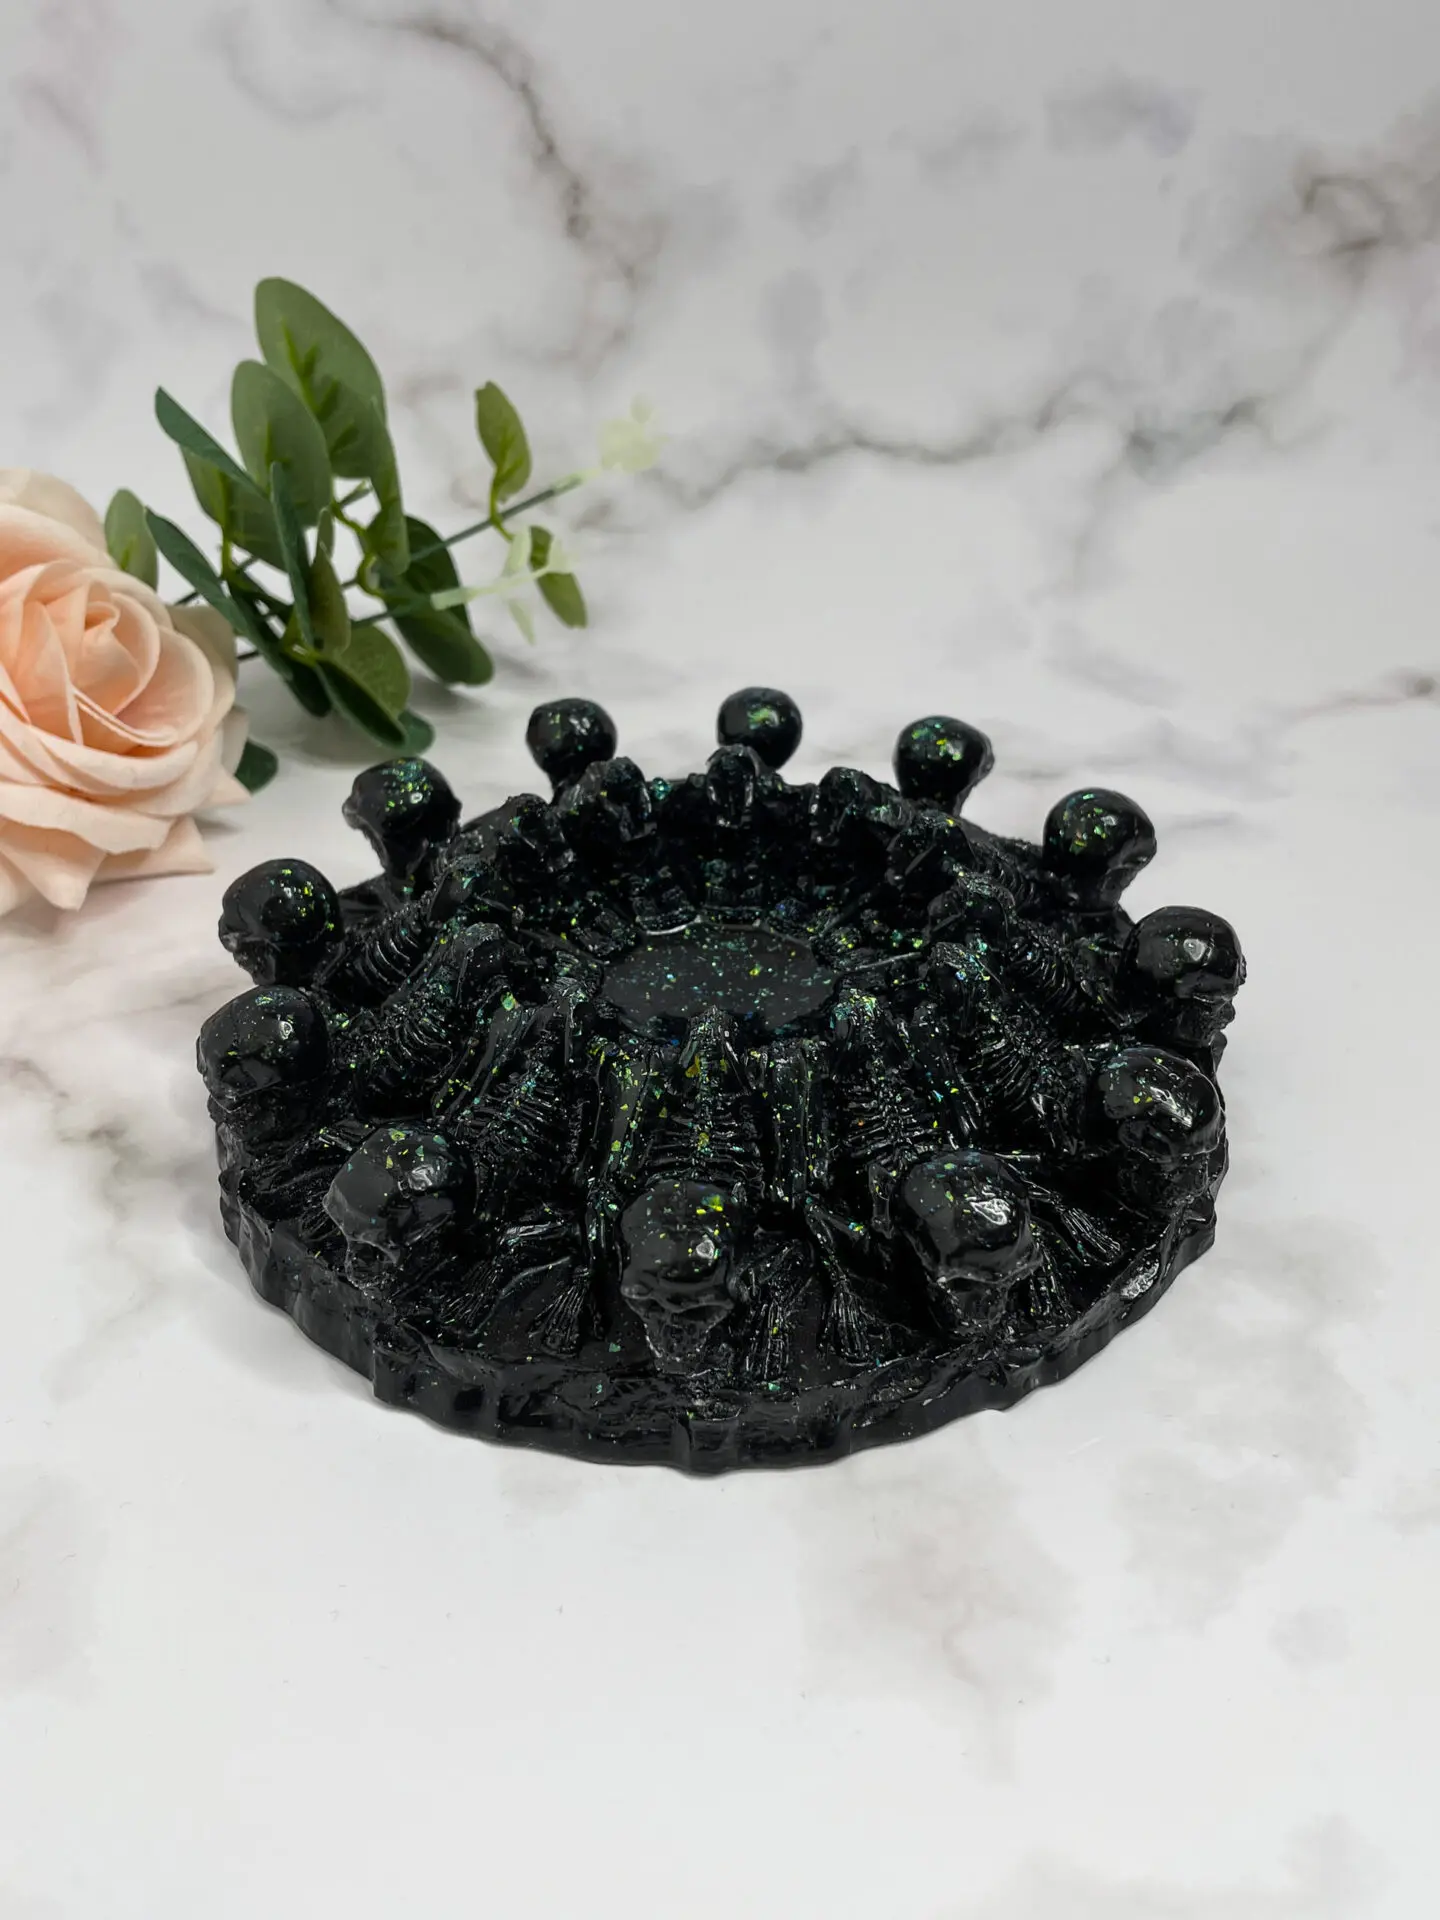 Cendrier skull noir et vert caméléon - boutique idées cadeaux - boutique en ligne - création française et artisanale.